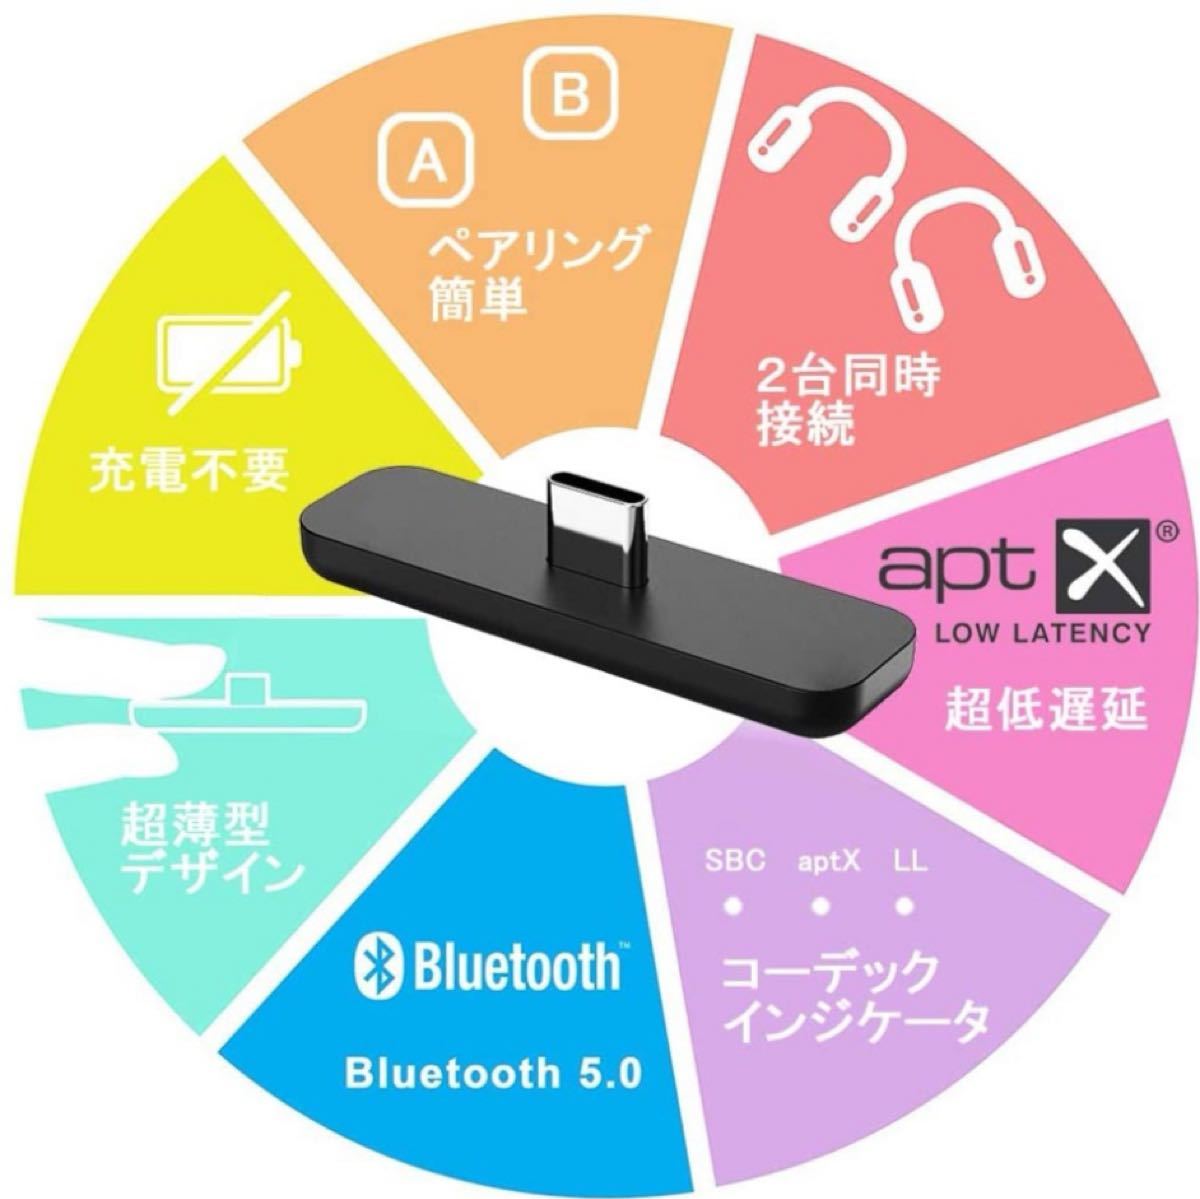 【新品】Switch PS4 PS5 ワイヤレス Bluetooth アダプター